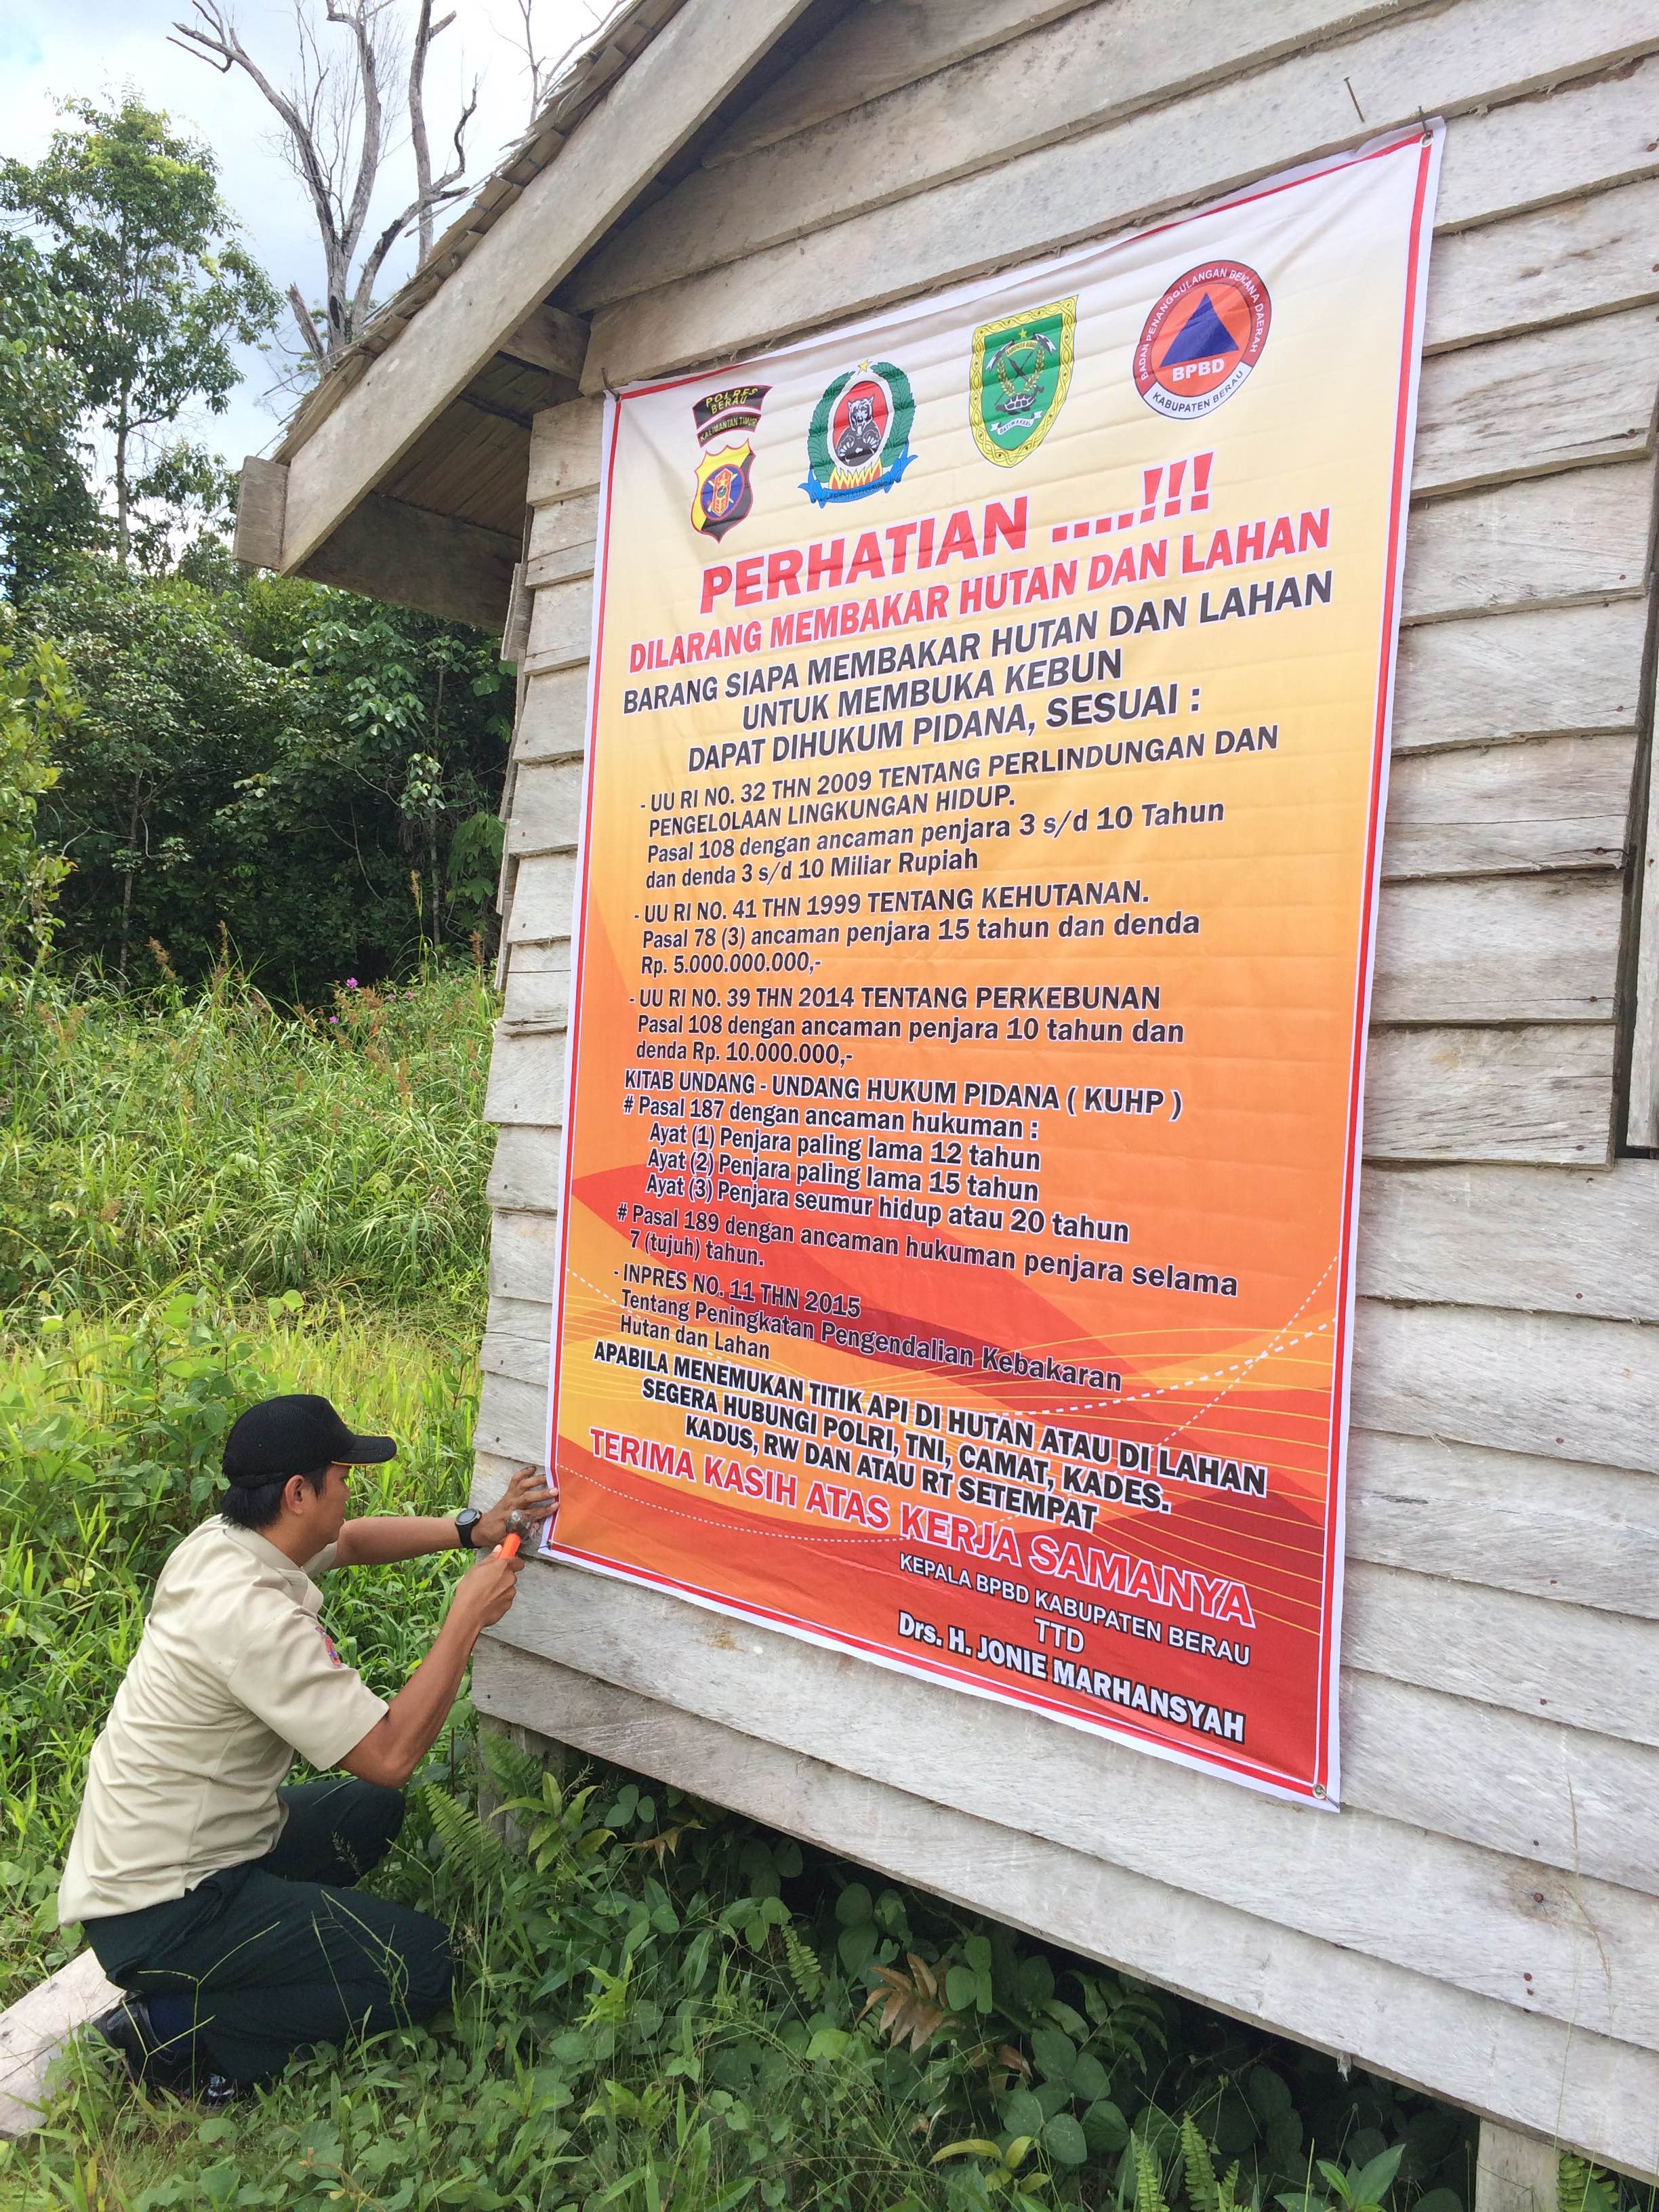 Himbauan Larangan Membakar Hutan Bpbd Kabupaten Berau